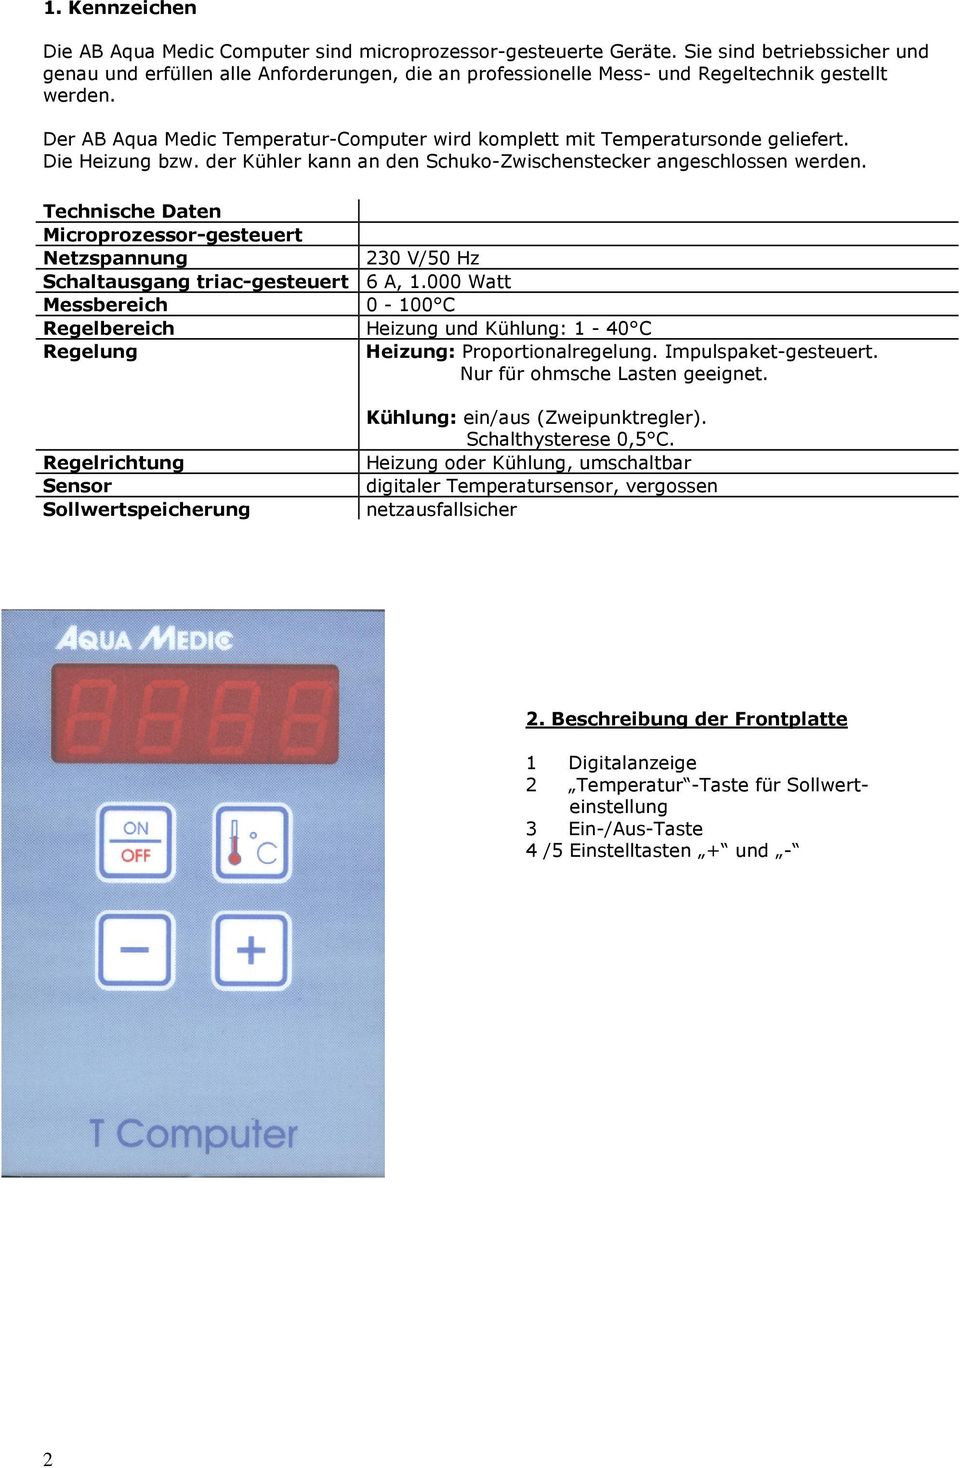 Der AB Aqua Medic Temperatur-Computer wird komplett mit Temperatursonde geliefert. Die Heizung bzw. der Kühler kann an den Schuko-Zwischenstecker angeschlossen werden.